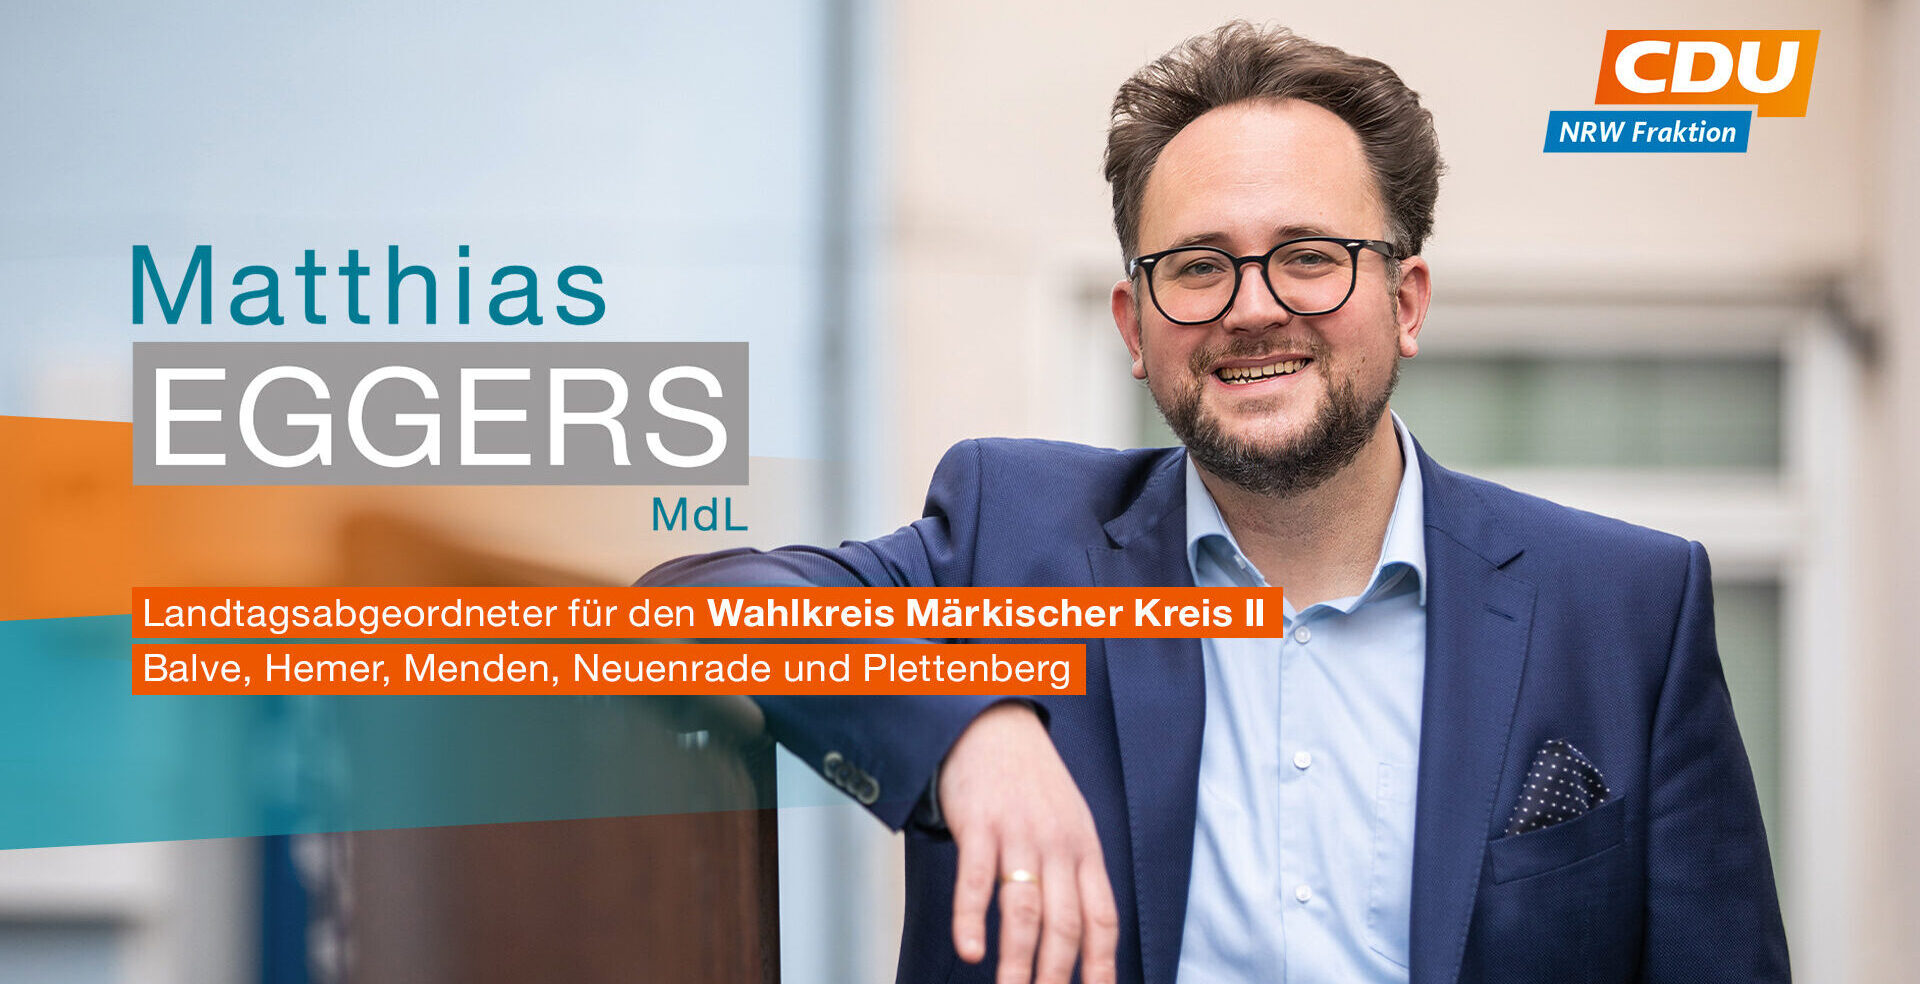 Matthias Eggers Landtagsabgeordneter für die Städte Balve, Hemer, Menden, Neuenrade und Plettenberg